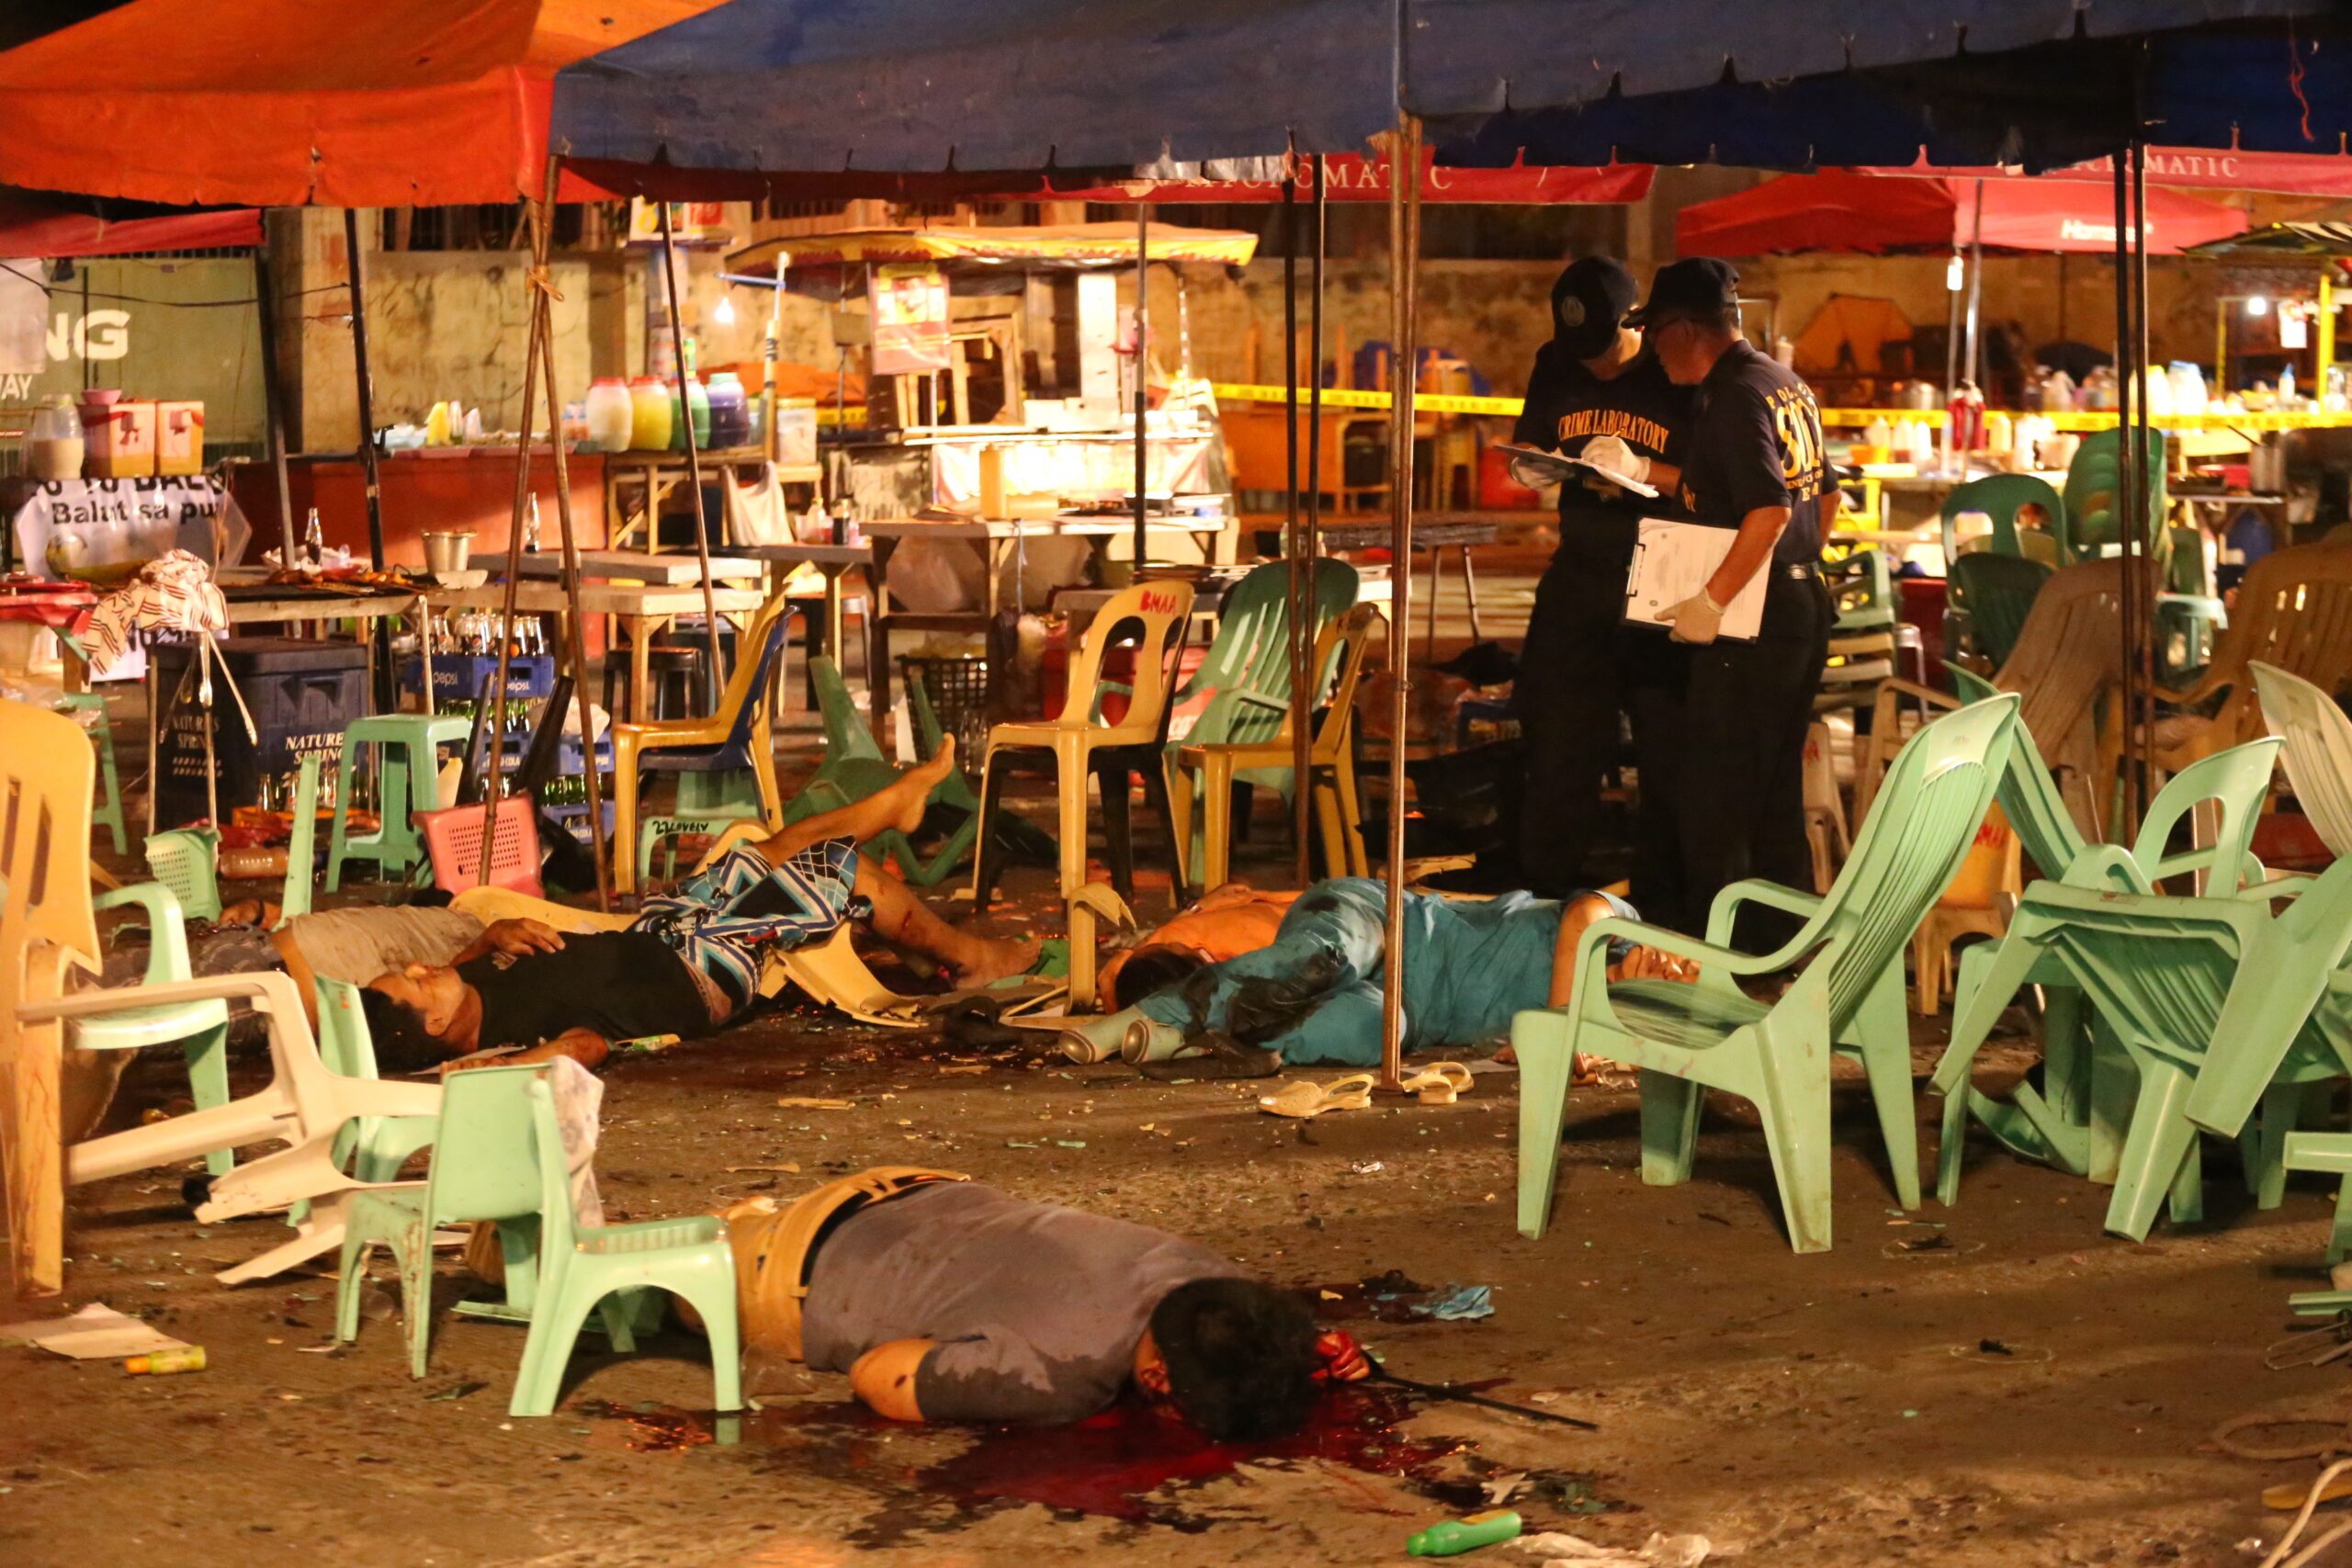 US, Australia condole with victims of Davao explosion